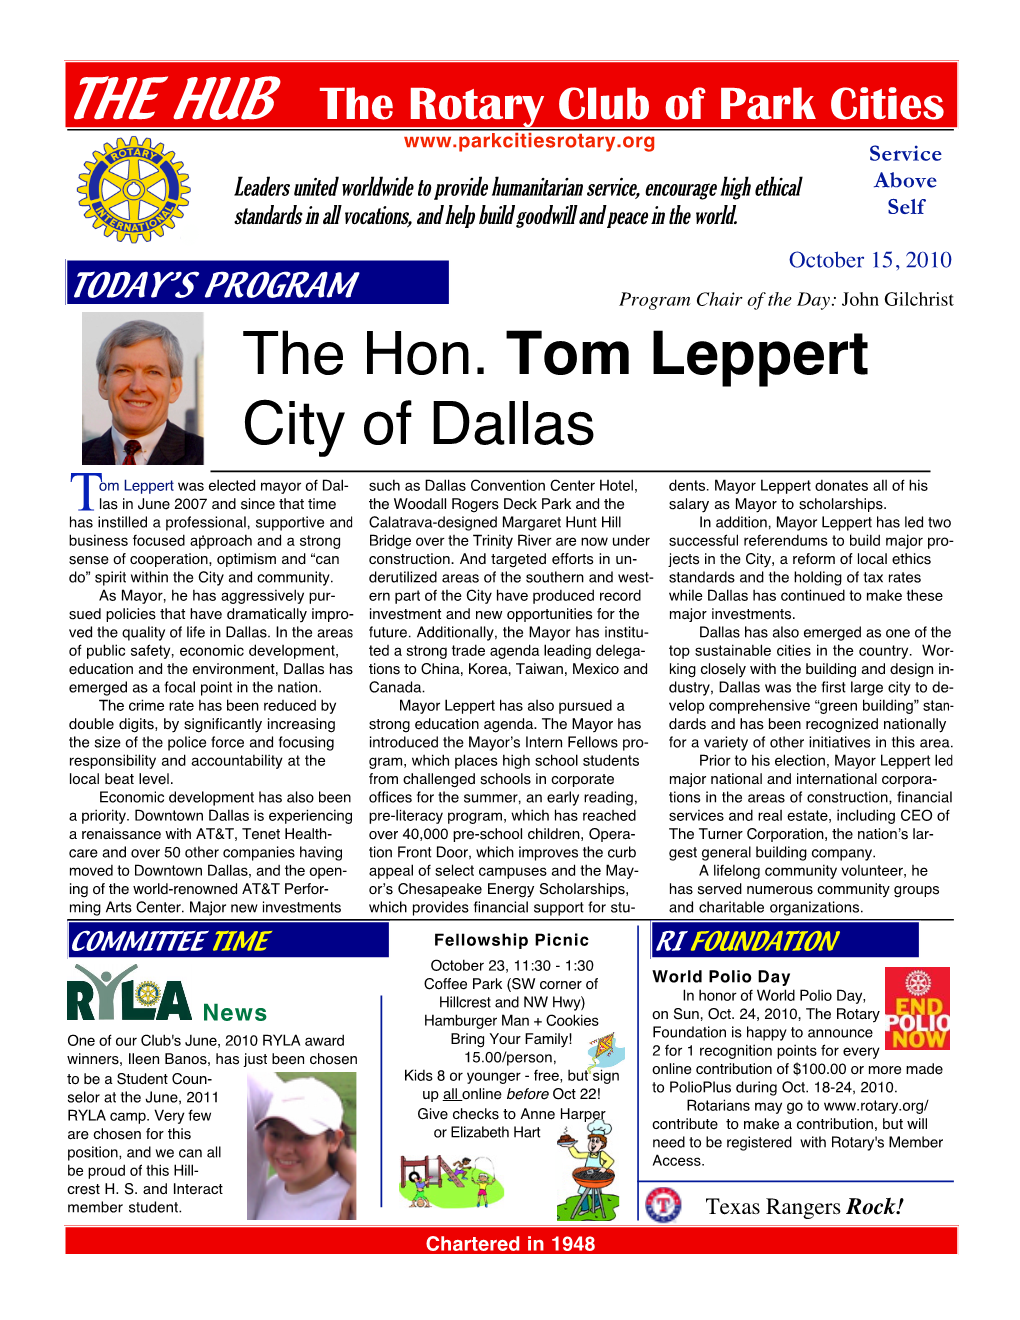 The Hon. Tom Leppert City of Dallas